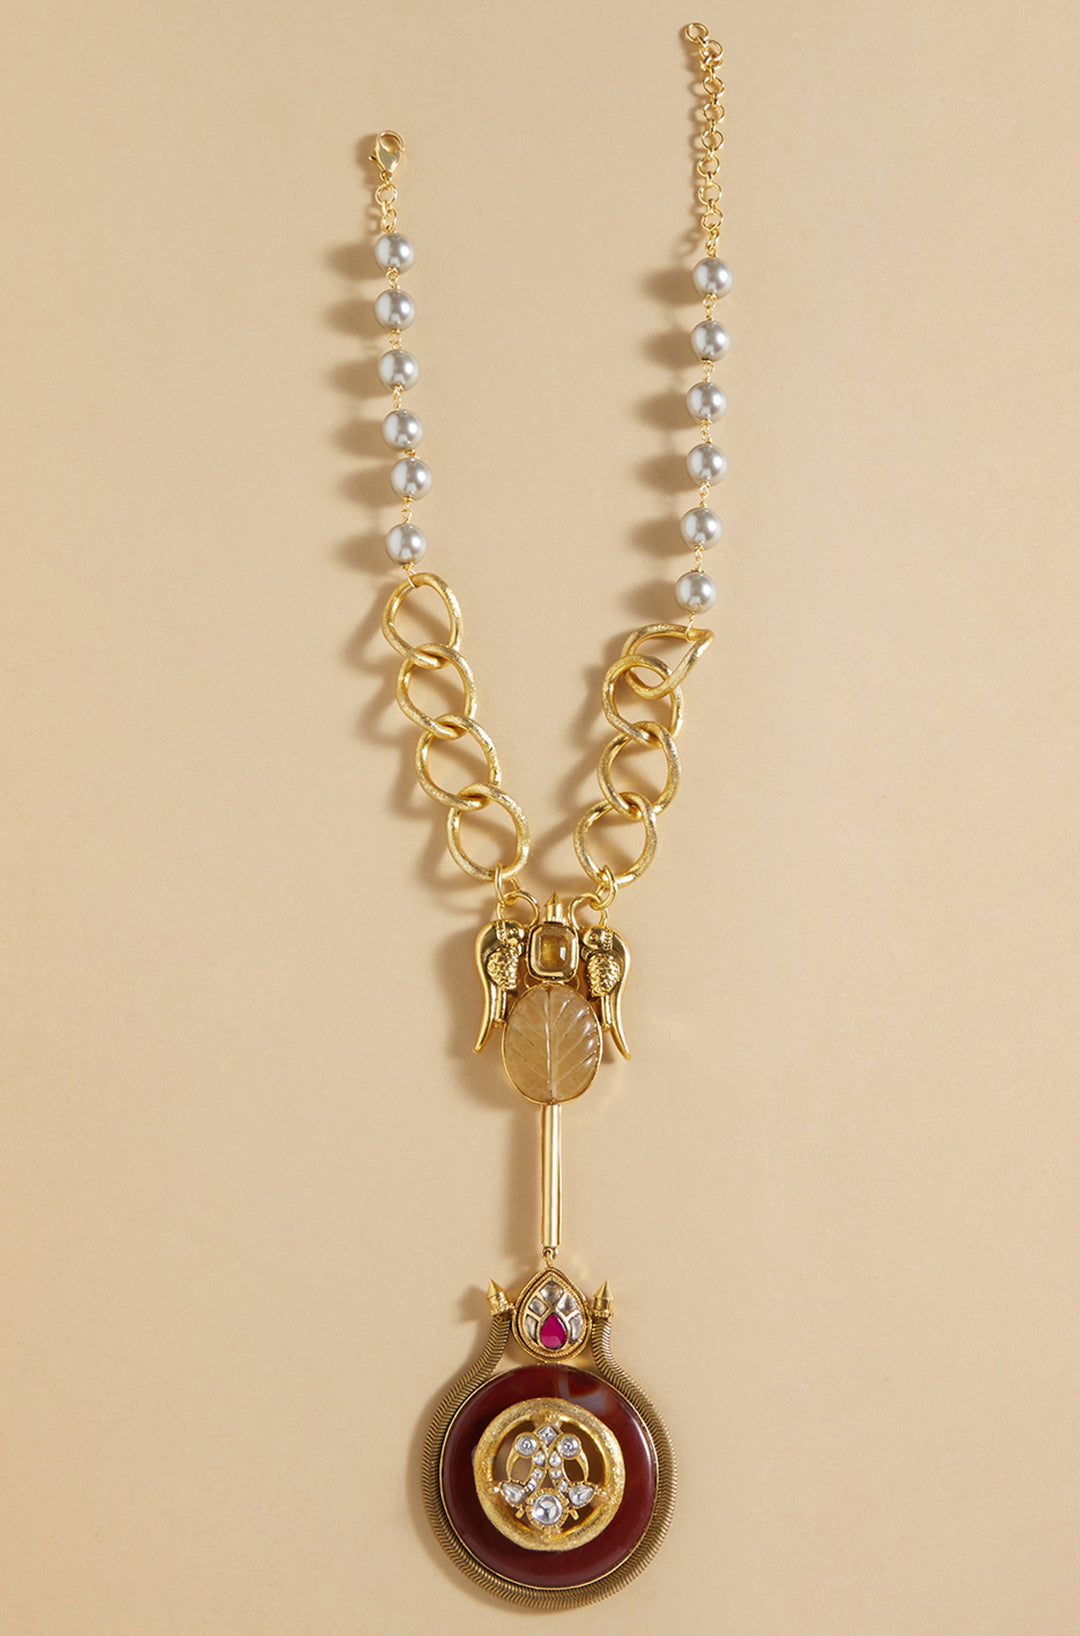 Gold Tone Bespoke Pendant Necklace